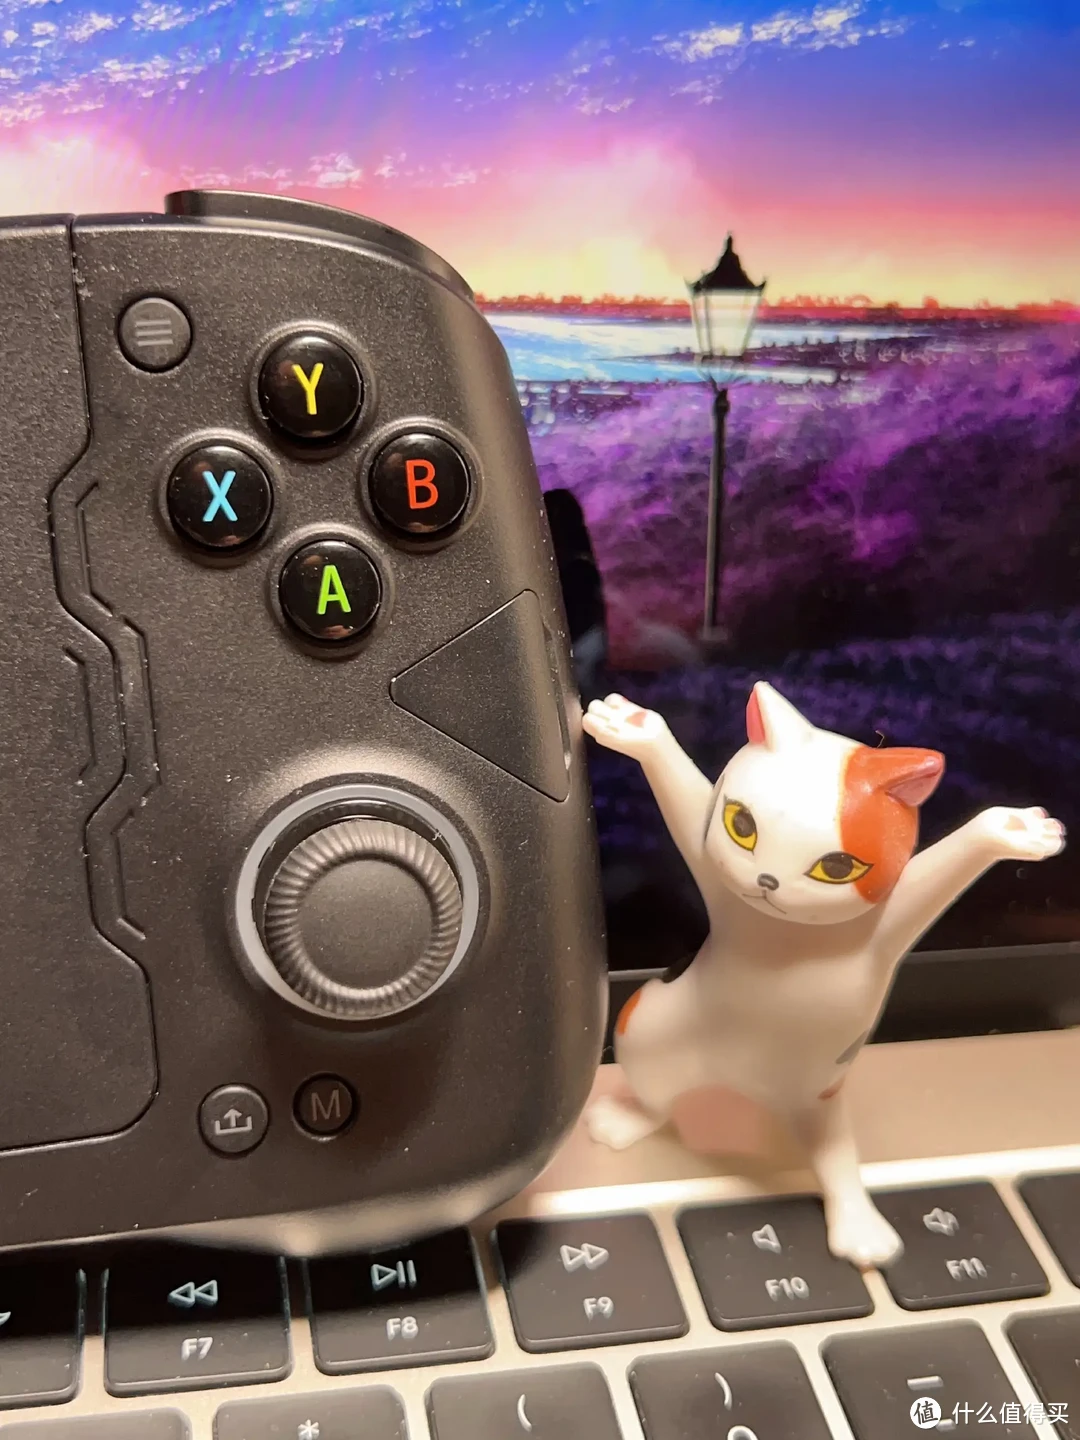 手机太小？阻碍发挥？玩的不爽？盖世小鸡GAMESIR-X4手机游戏手柄帮你提升游戏体验！